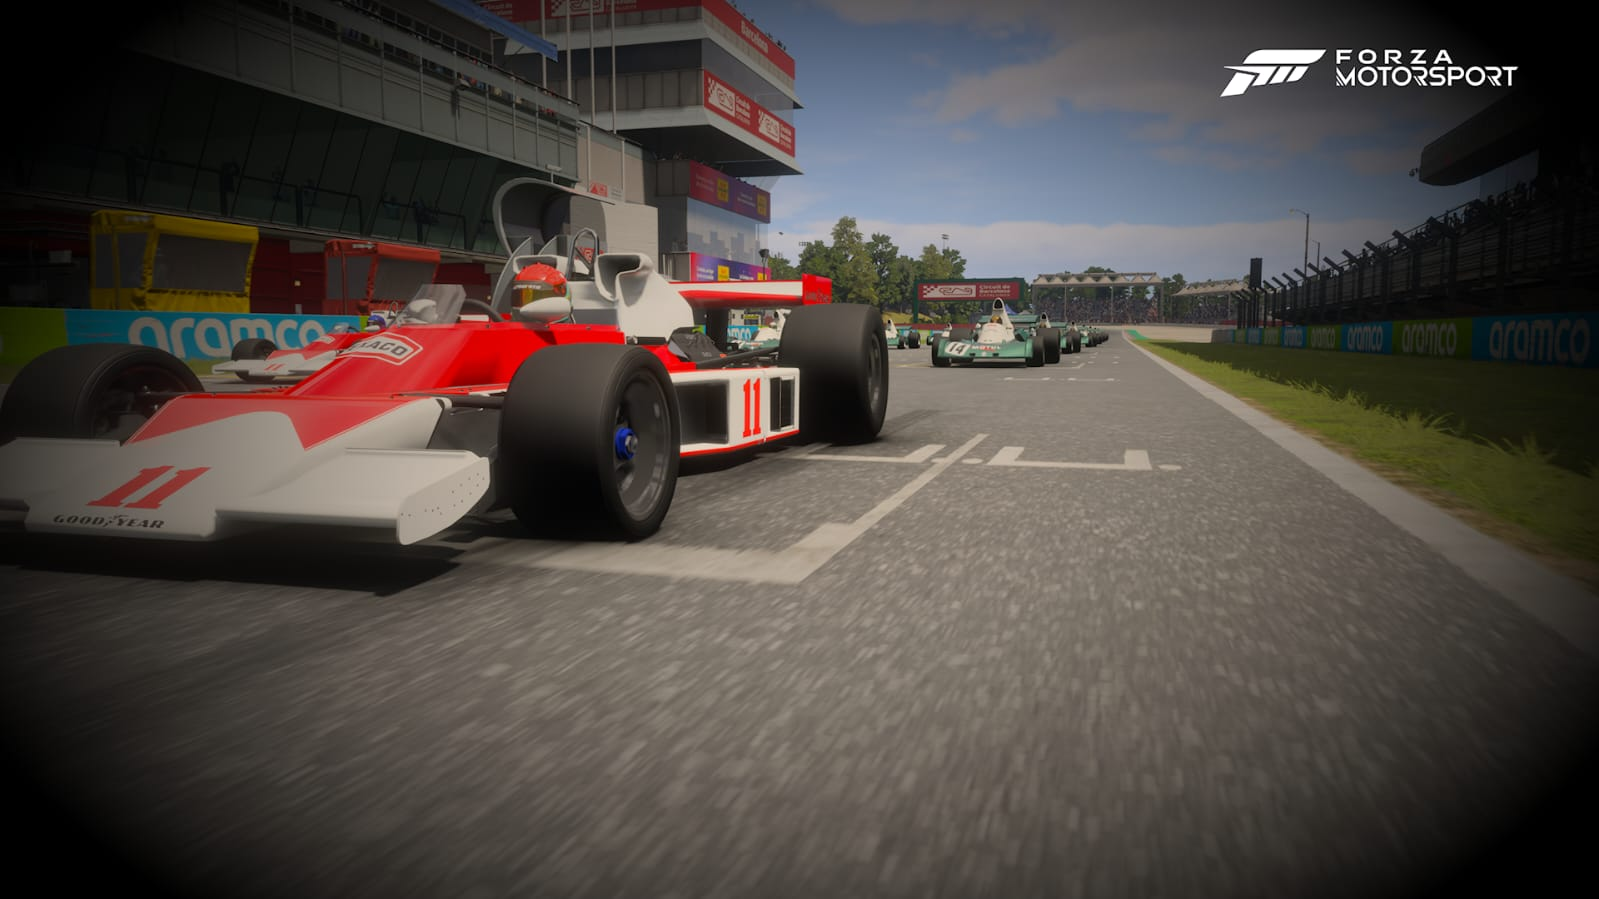 Forza Motorsport, un exclusivo renovado a toda velocidad 25